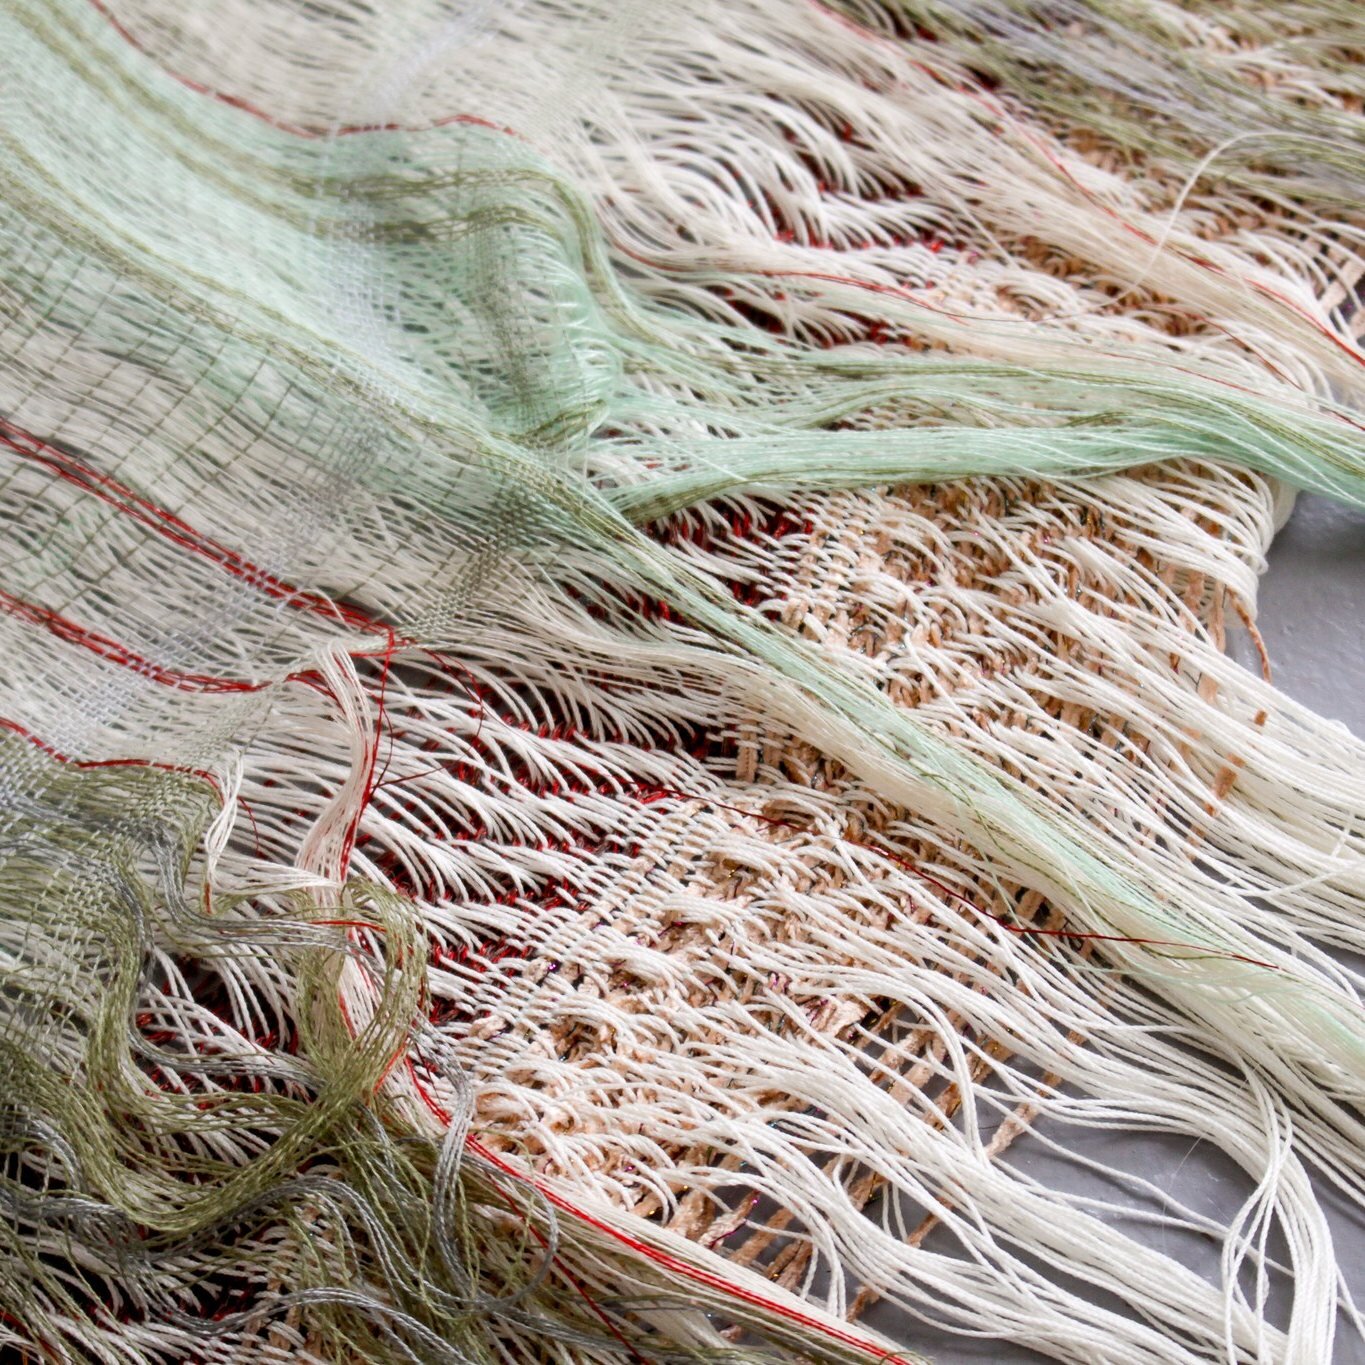 L'appel &agrave; candidatures pour la r&eacute;sidence Art textile 2023 est en cours. Retour aujourd'hui sur le travail de @@louiselimontas, designer textile, et toute premi&egrave;re r&eacute;sidente accueillie par L'Atelier du Haut-Anjou.

Cette pr